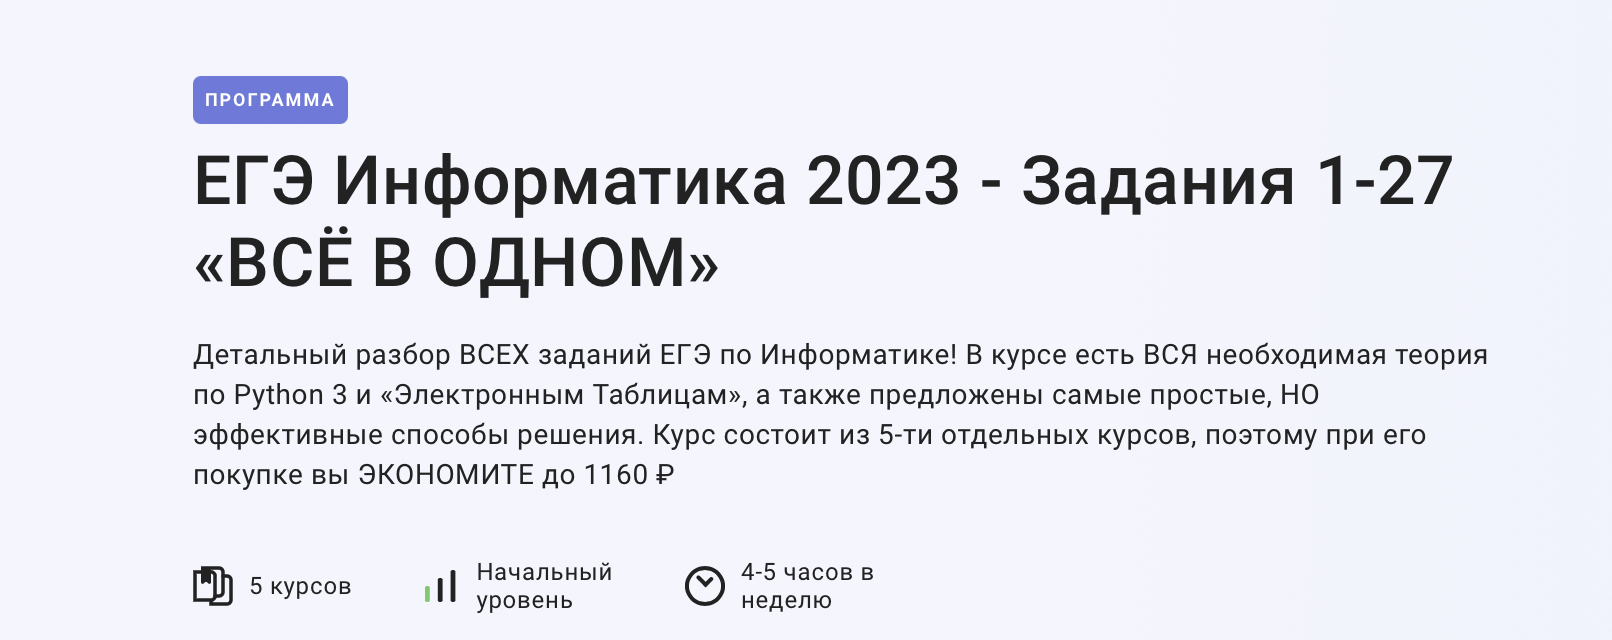 Проходной информатика 2023. Задания ЕГЭ по информатике 2023. Изменения в ЕГЭ по информатике 2023. Продолжительность ЕГЭ по информатике 2023. 11 Задание ЕГЭ Информатика 2023.